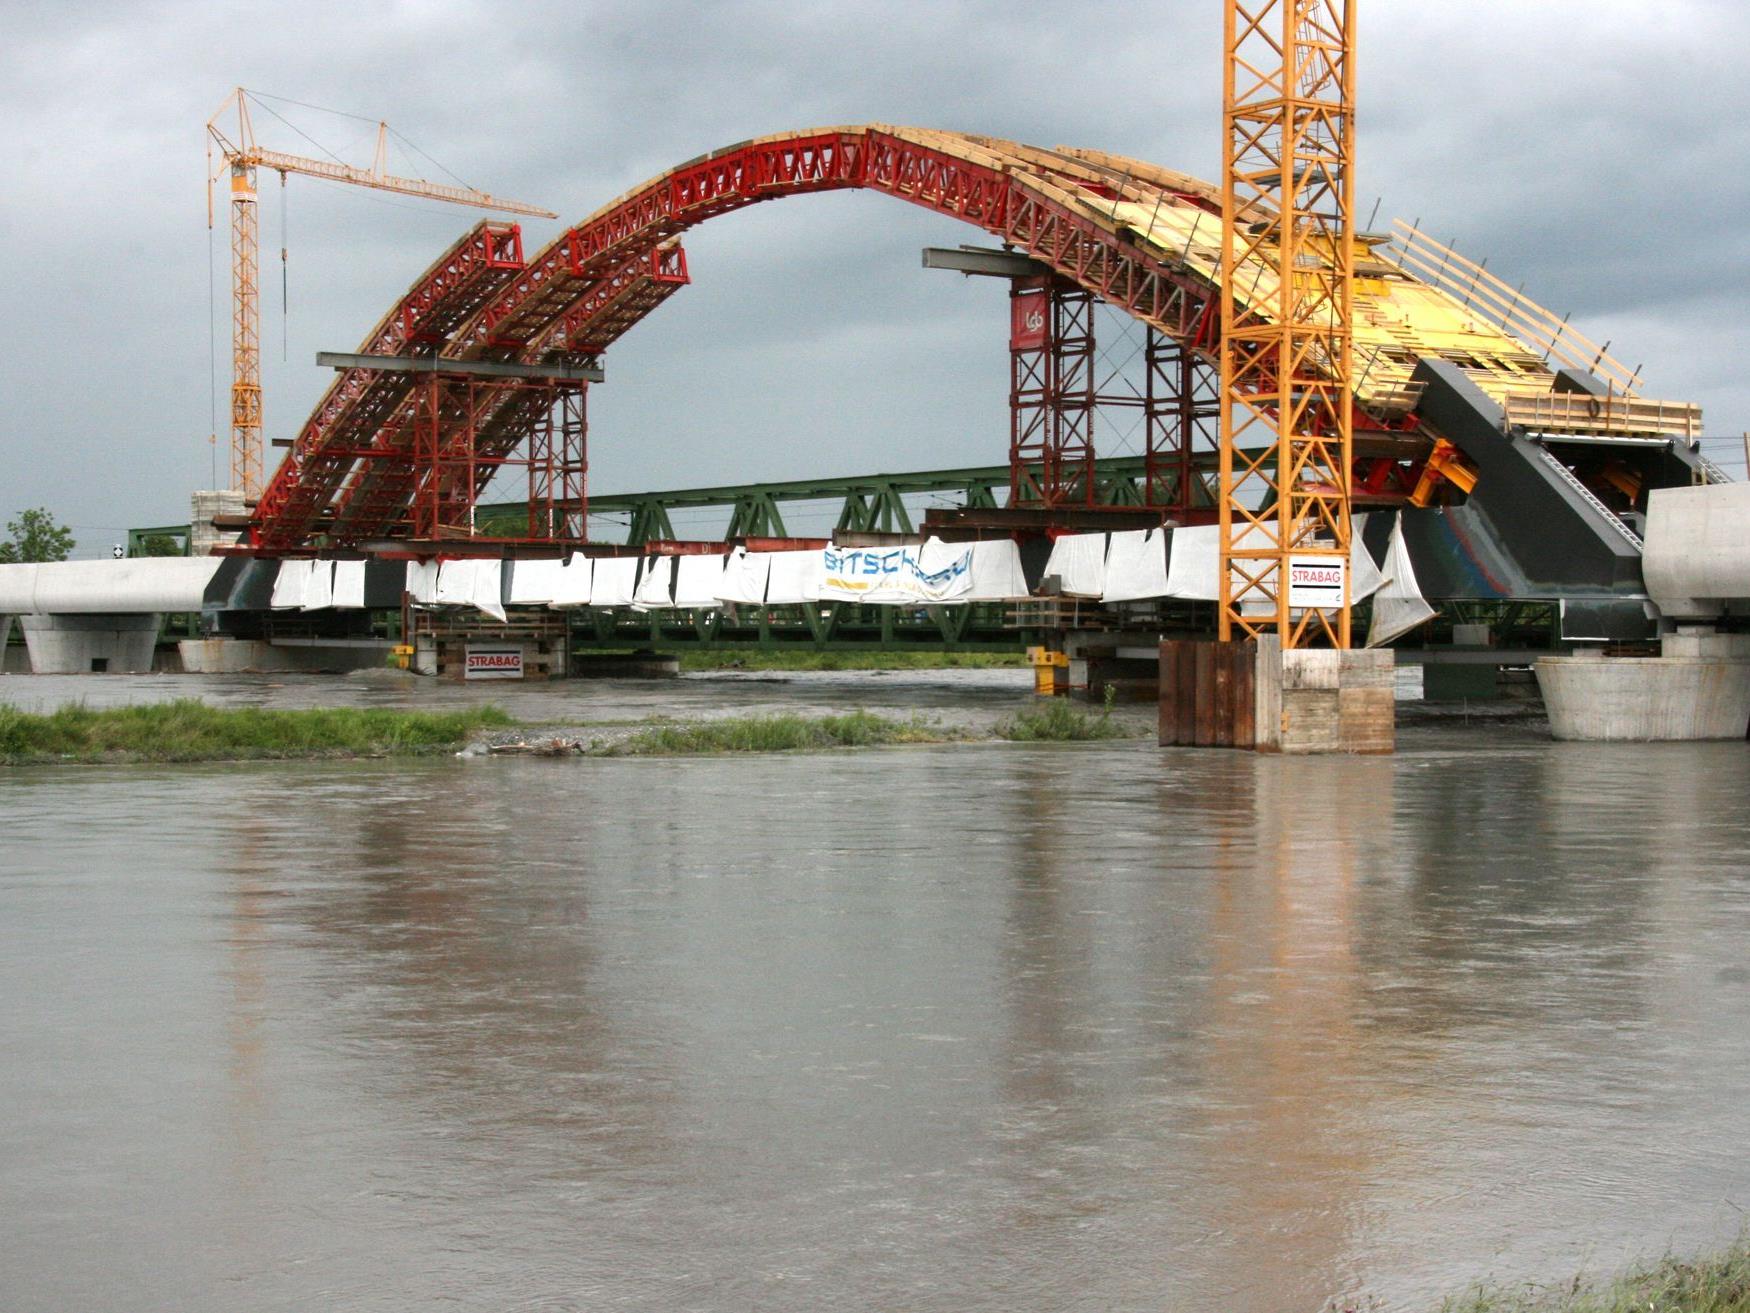 Die neue Rheinbrücke nimmt Form an, momentan stoppt der Hochwasser führende Rhein die Bauarbeiten.